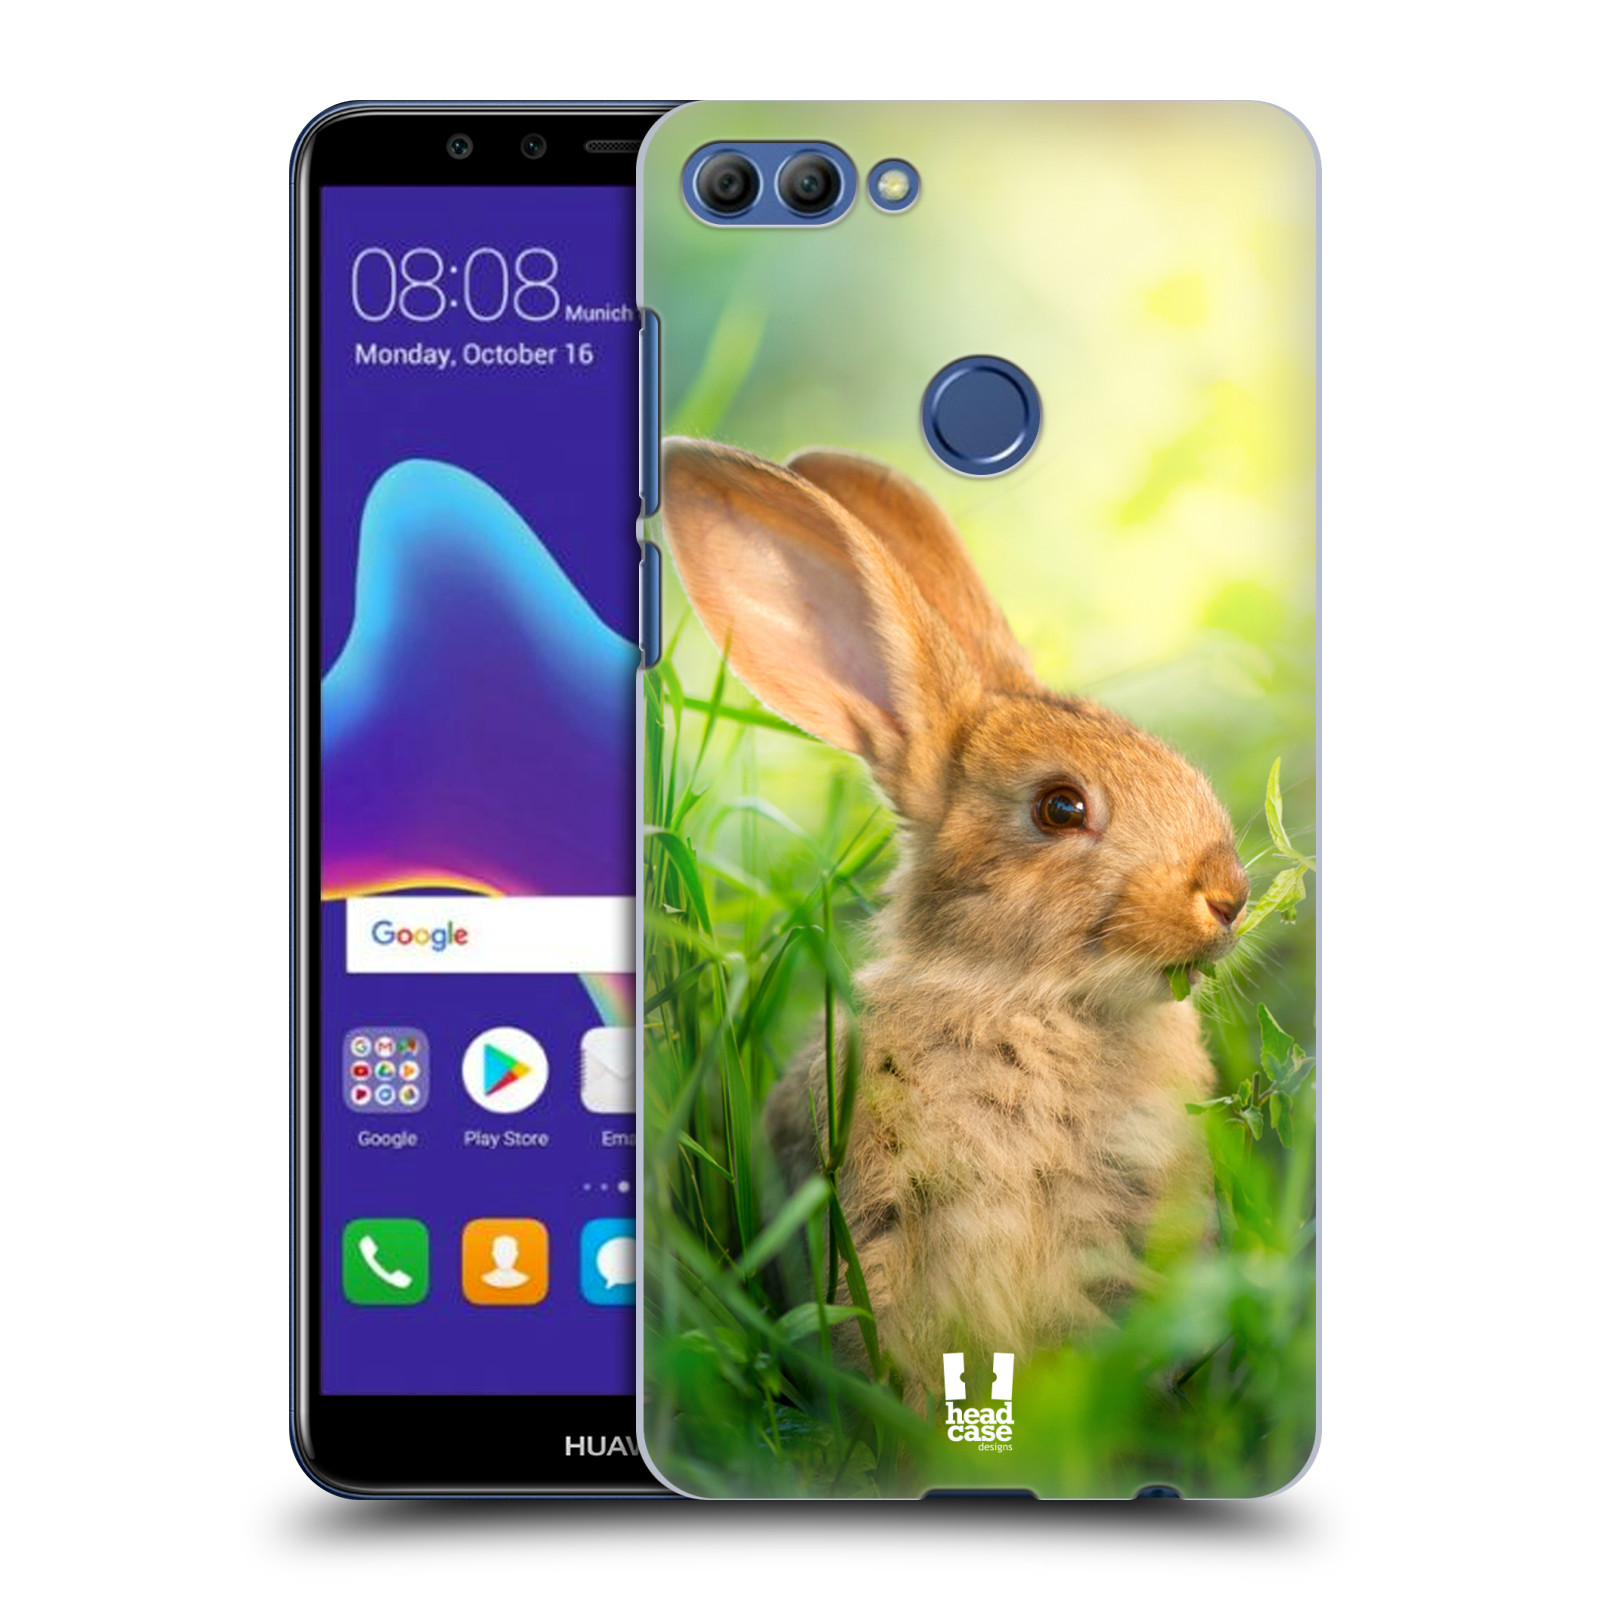 HEAD CASE plastový obal na mobil Huawei Y9 2018 vzor Divočina, Divoký život a zvířata foto ZAJÍČEK V TRÁVĚ ZELENÁ